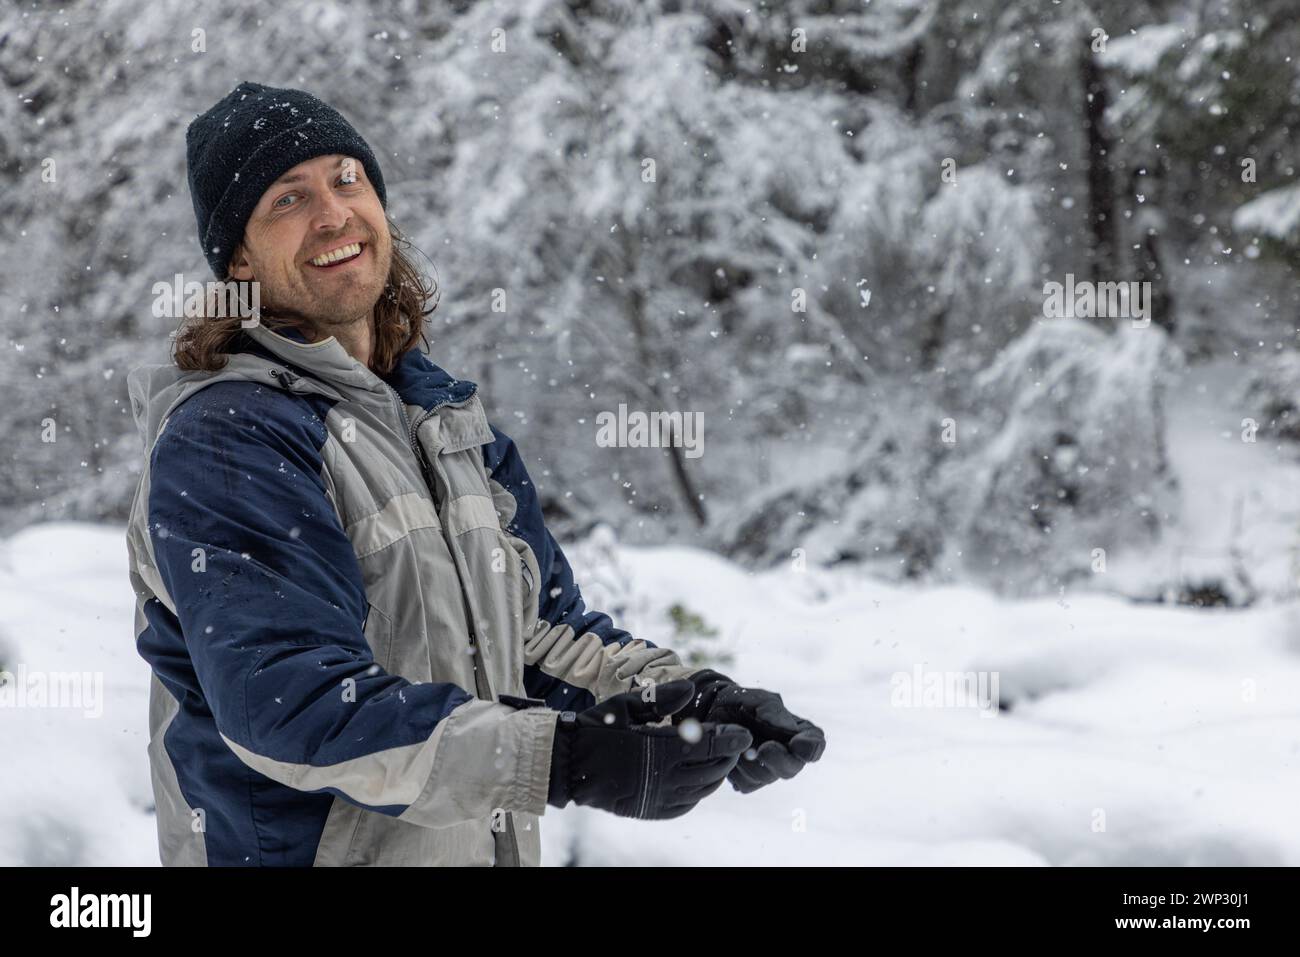 Ein Mann mit einer blau-grauen Jacke lächelt im Schnee. Er hält ein Paar Handschuhe und genießt das Winterwetter Stockfoto